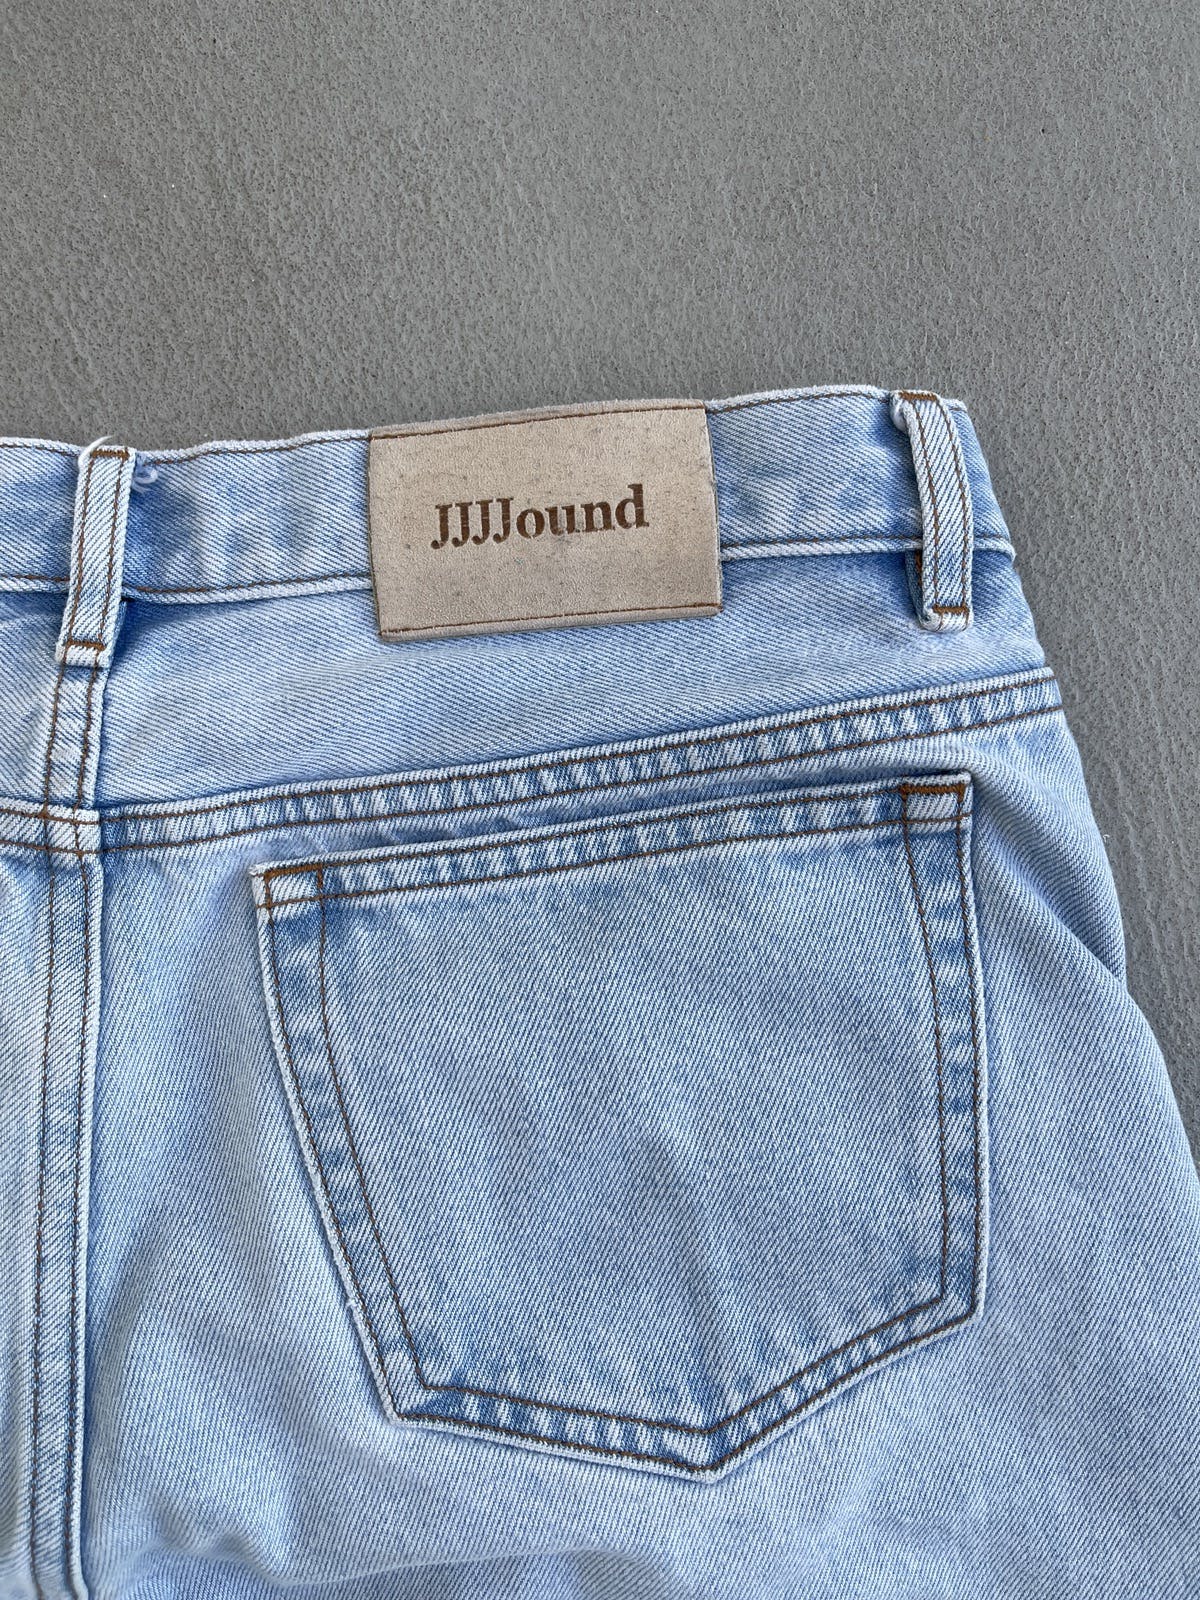 A.P.C. x Jjjjound Petit Standard Flare Denim Jeans - 4